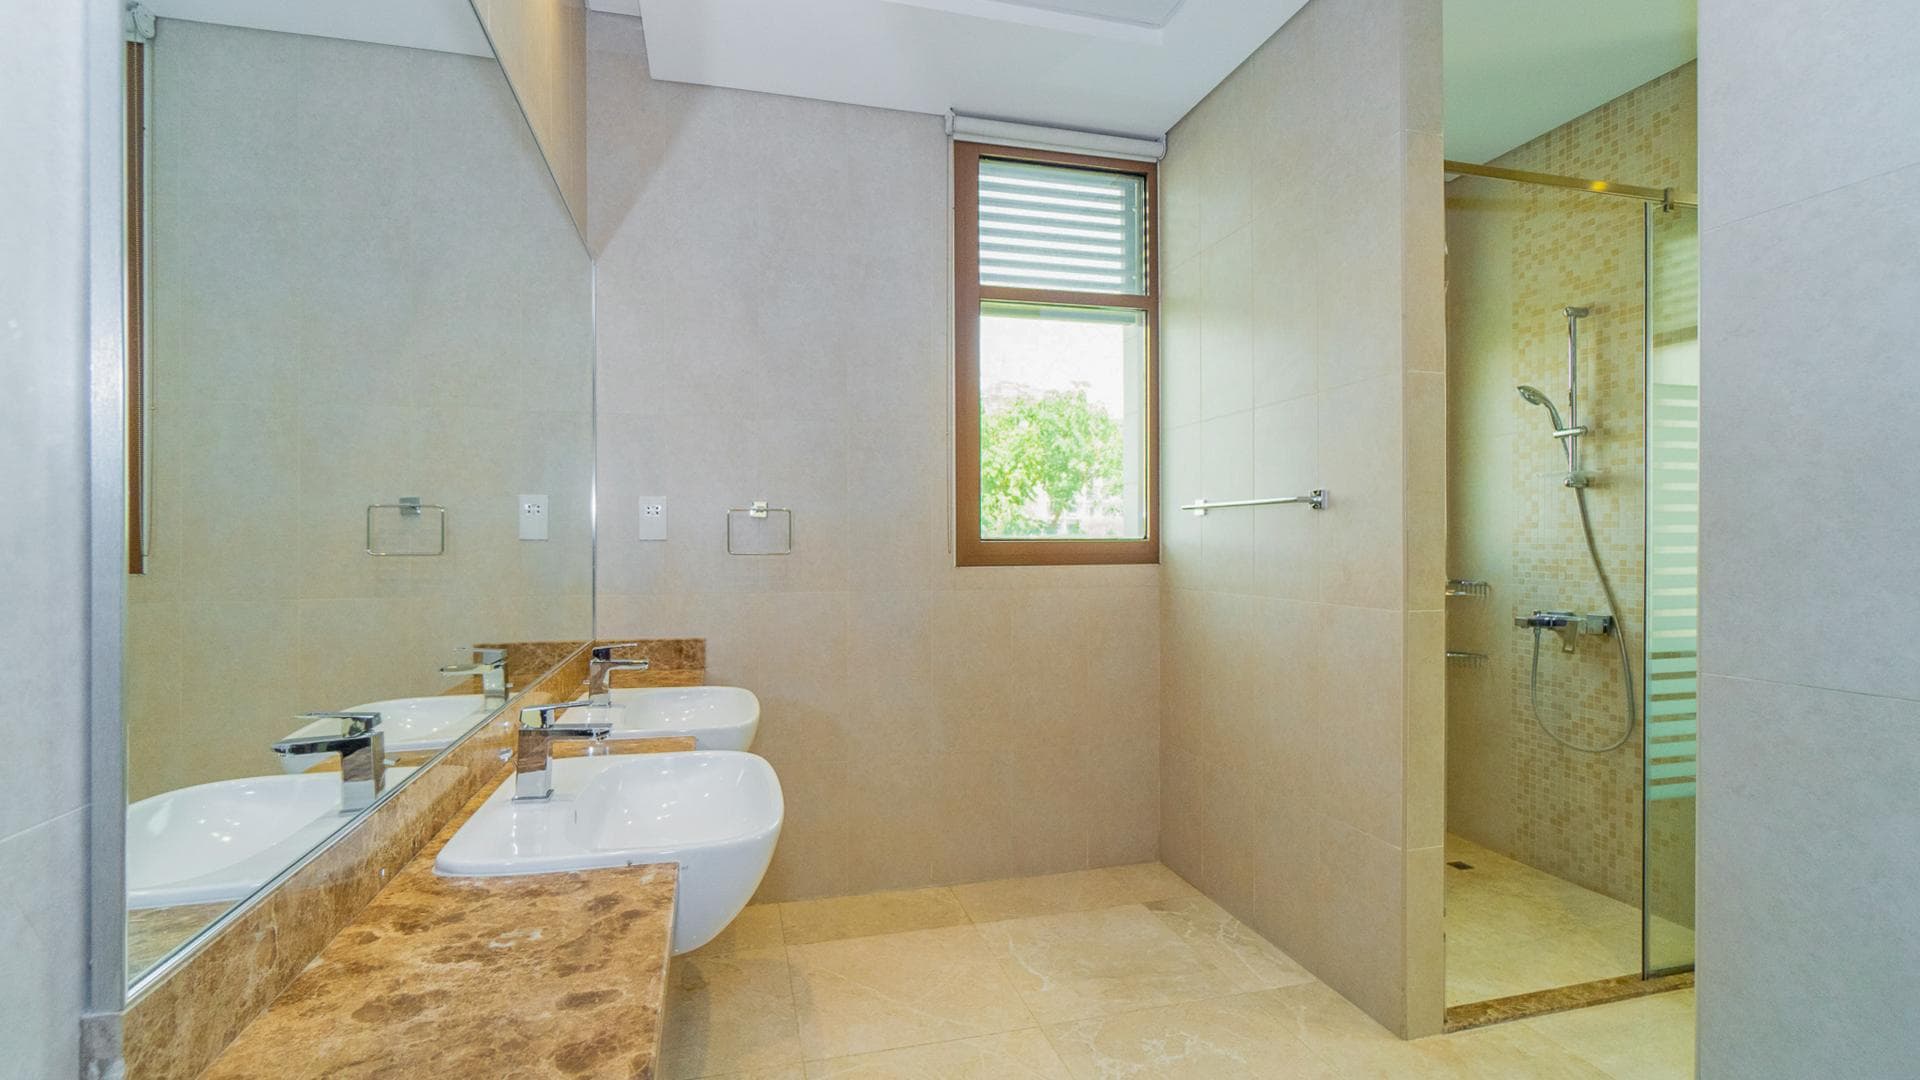 5 Bedroom Villa For Rent Meydan Gated Community Lp13586 24f48d924616f800.jpg